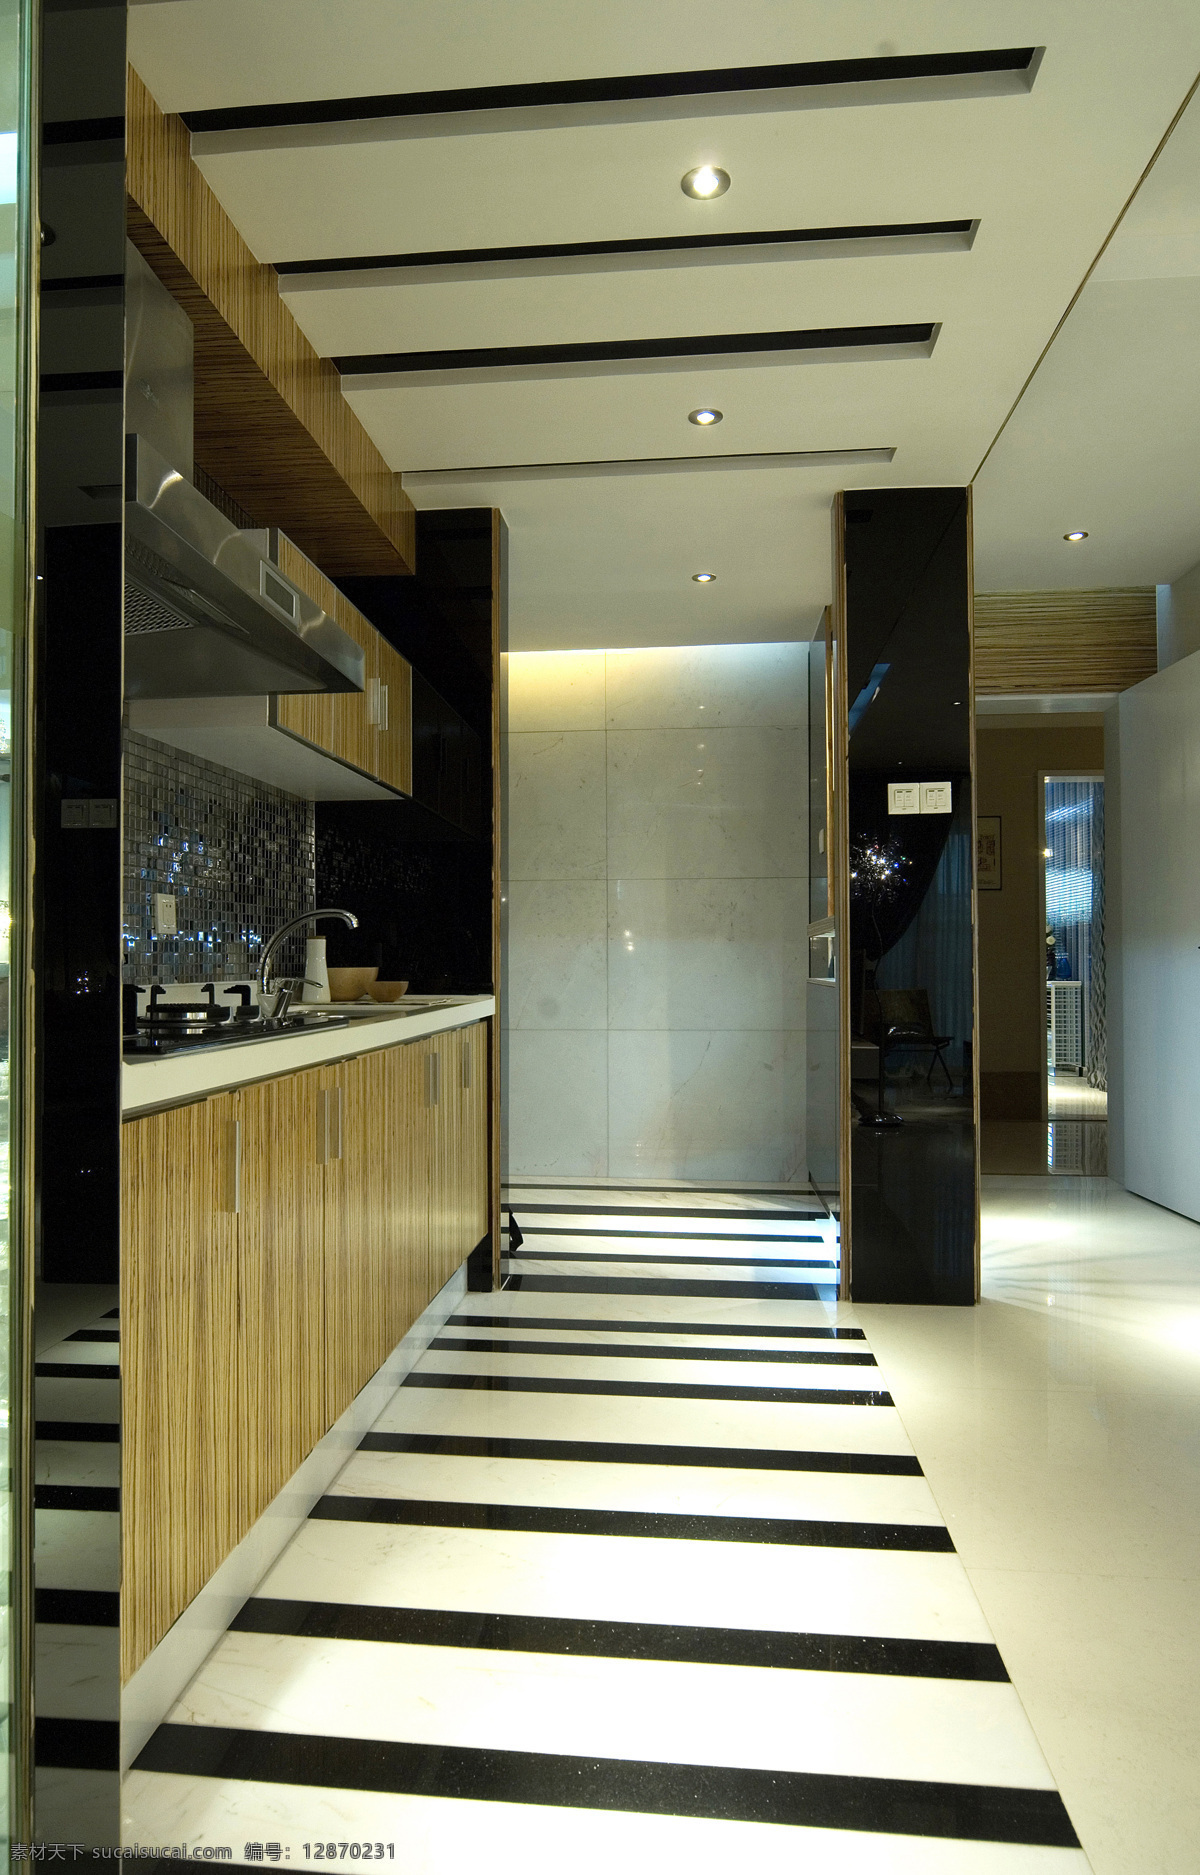 简约 风 室内设计 黑白 格 纹 地板 厨房 效果图 现代 料理台 抽油烟机 家装